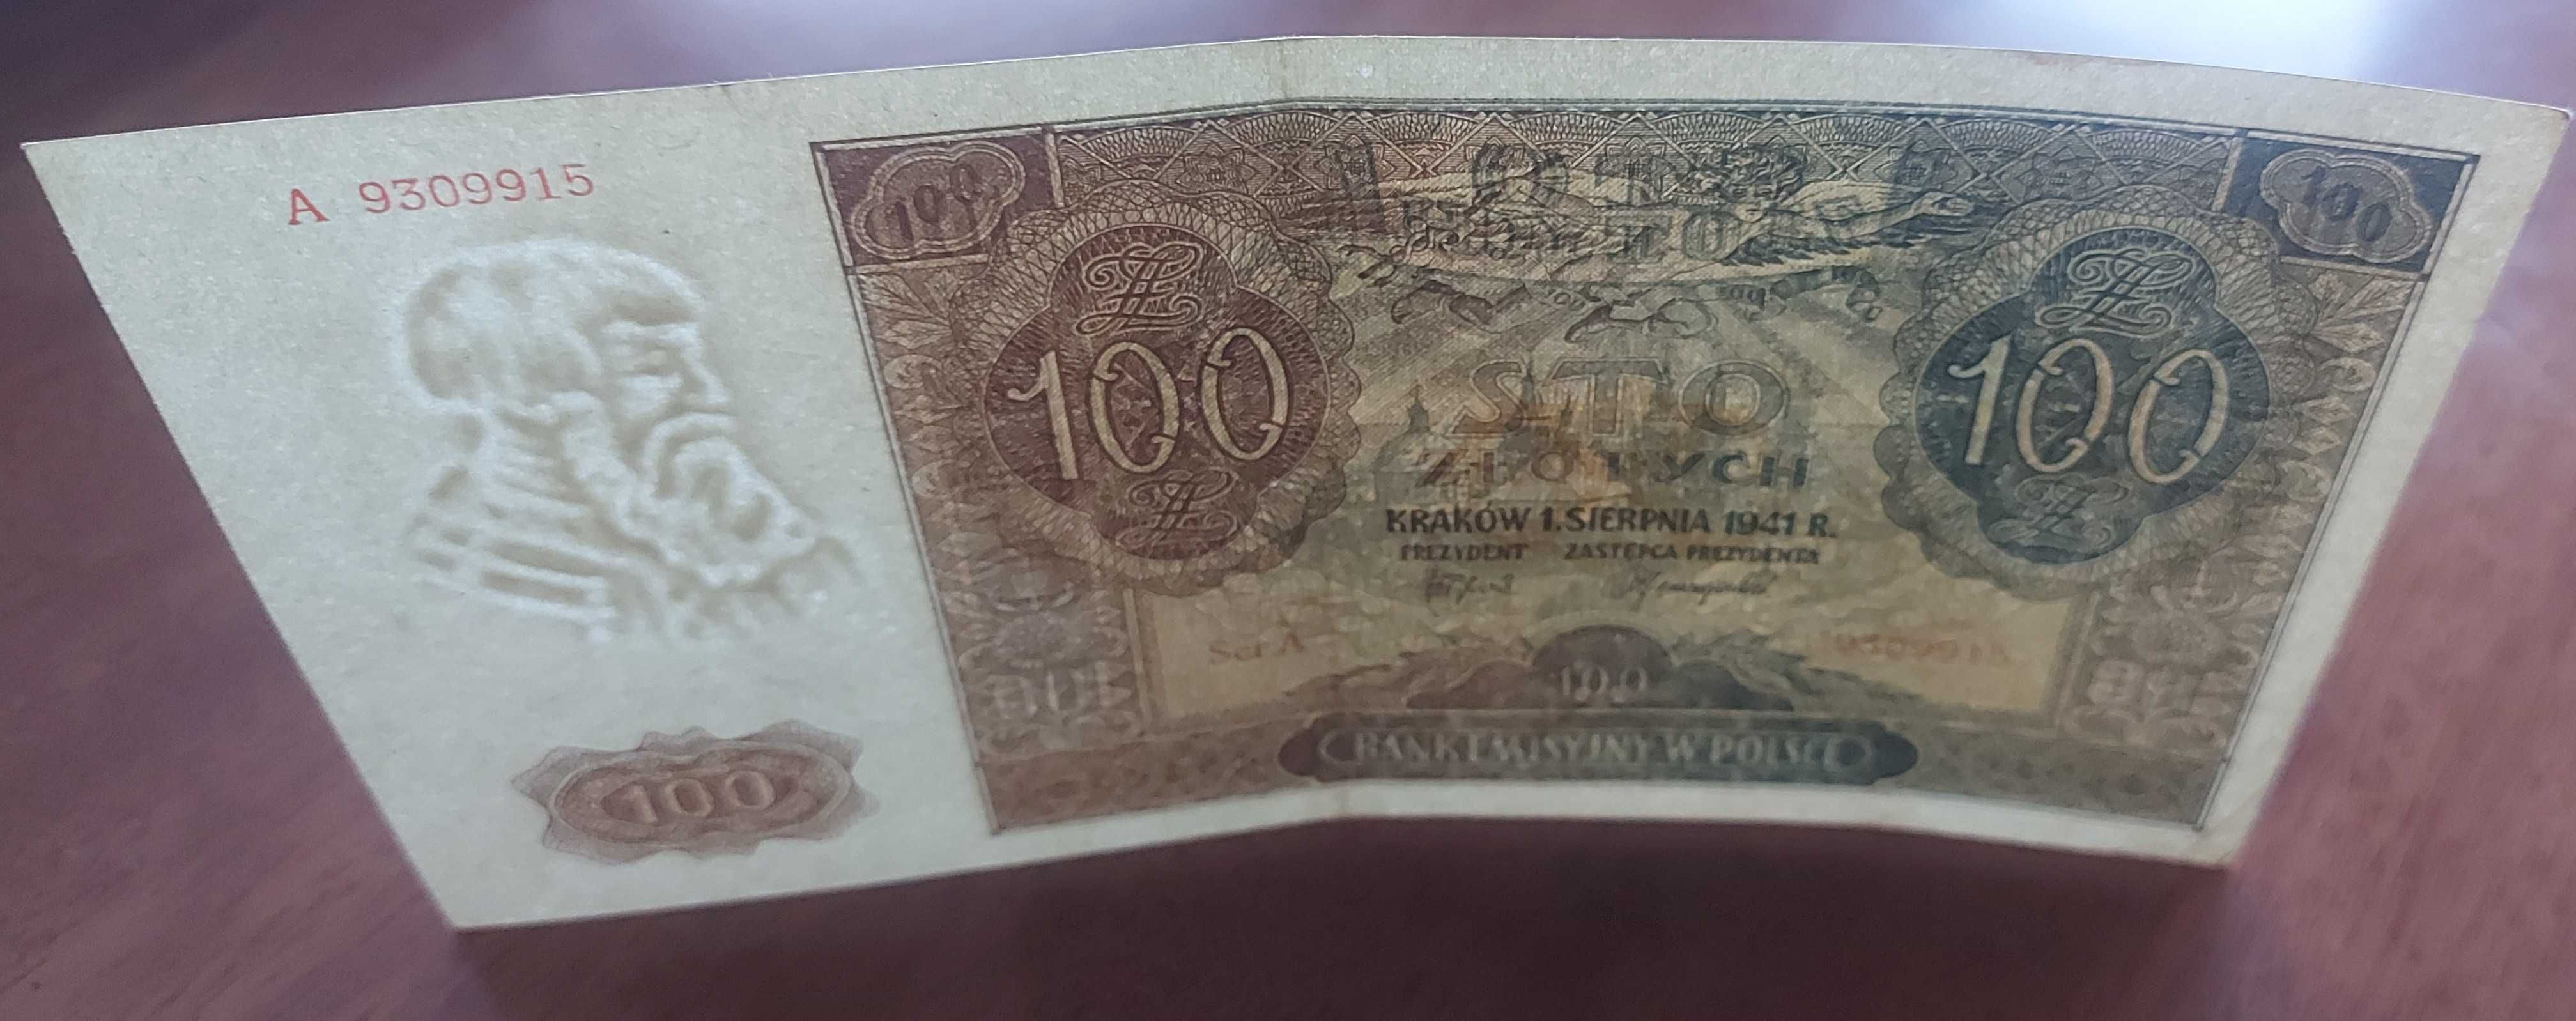 Banknot 100 złotych, emisja z datą 1941 rok.